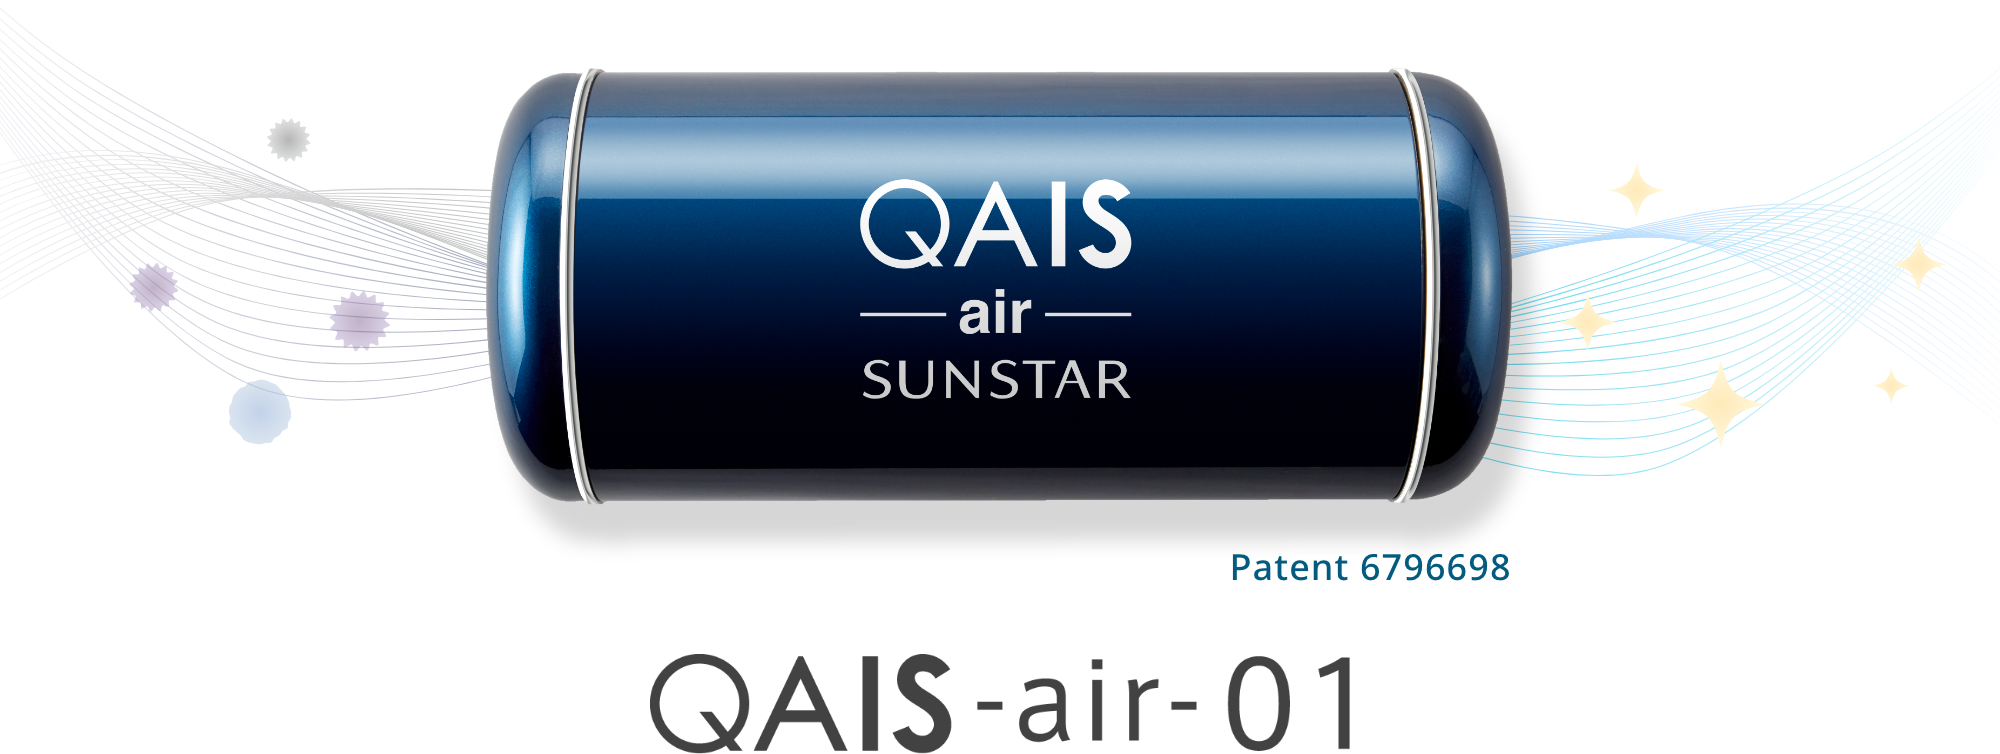 Fresher Air for a Healthier You” QAIS -air- 01｜ Sunstar